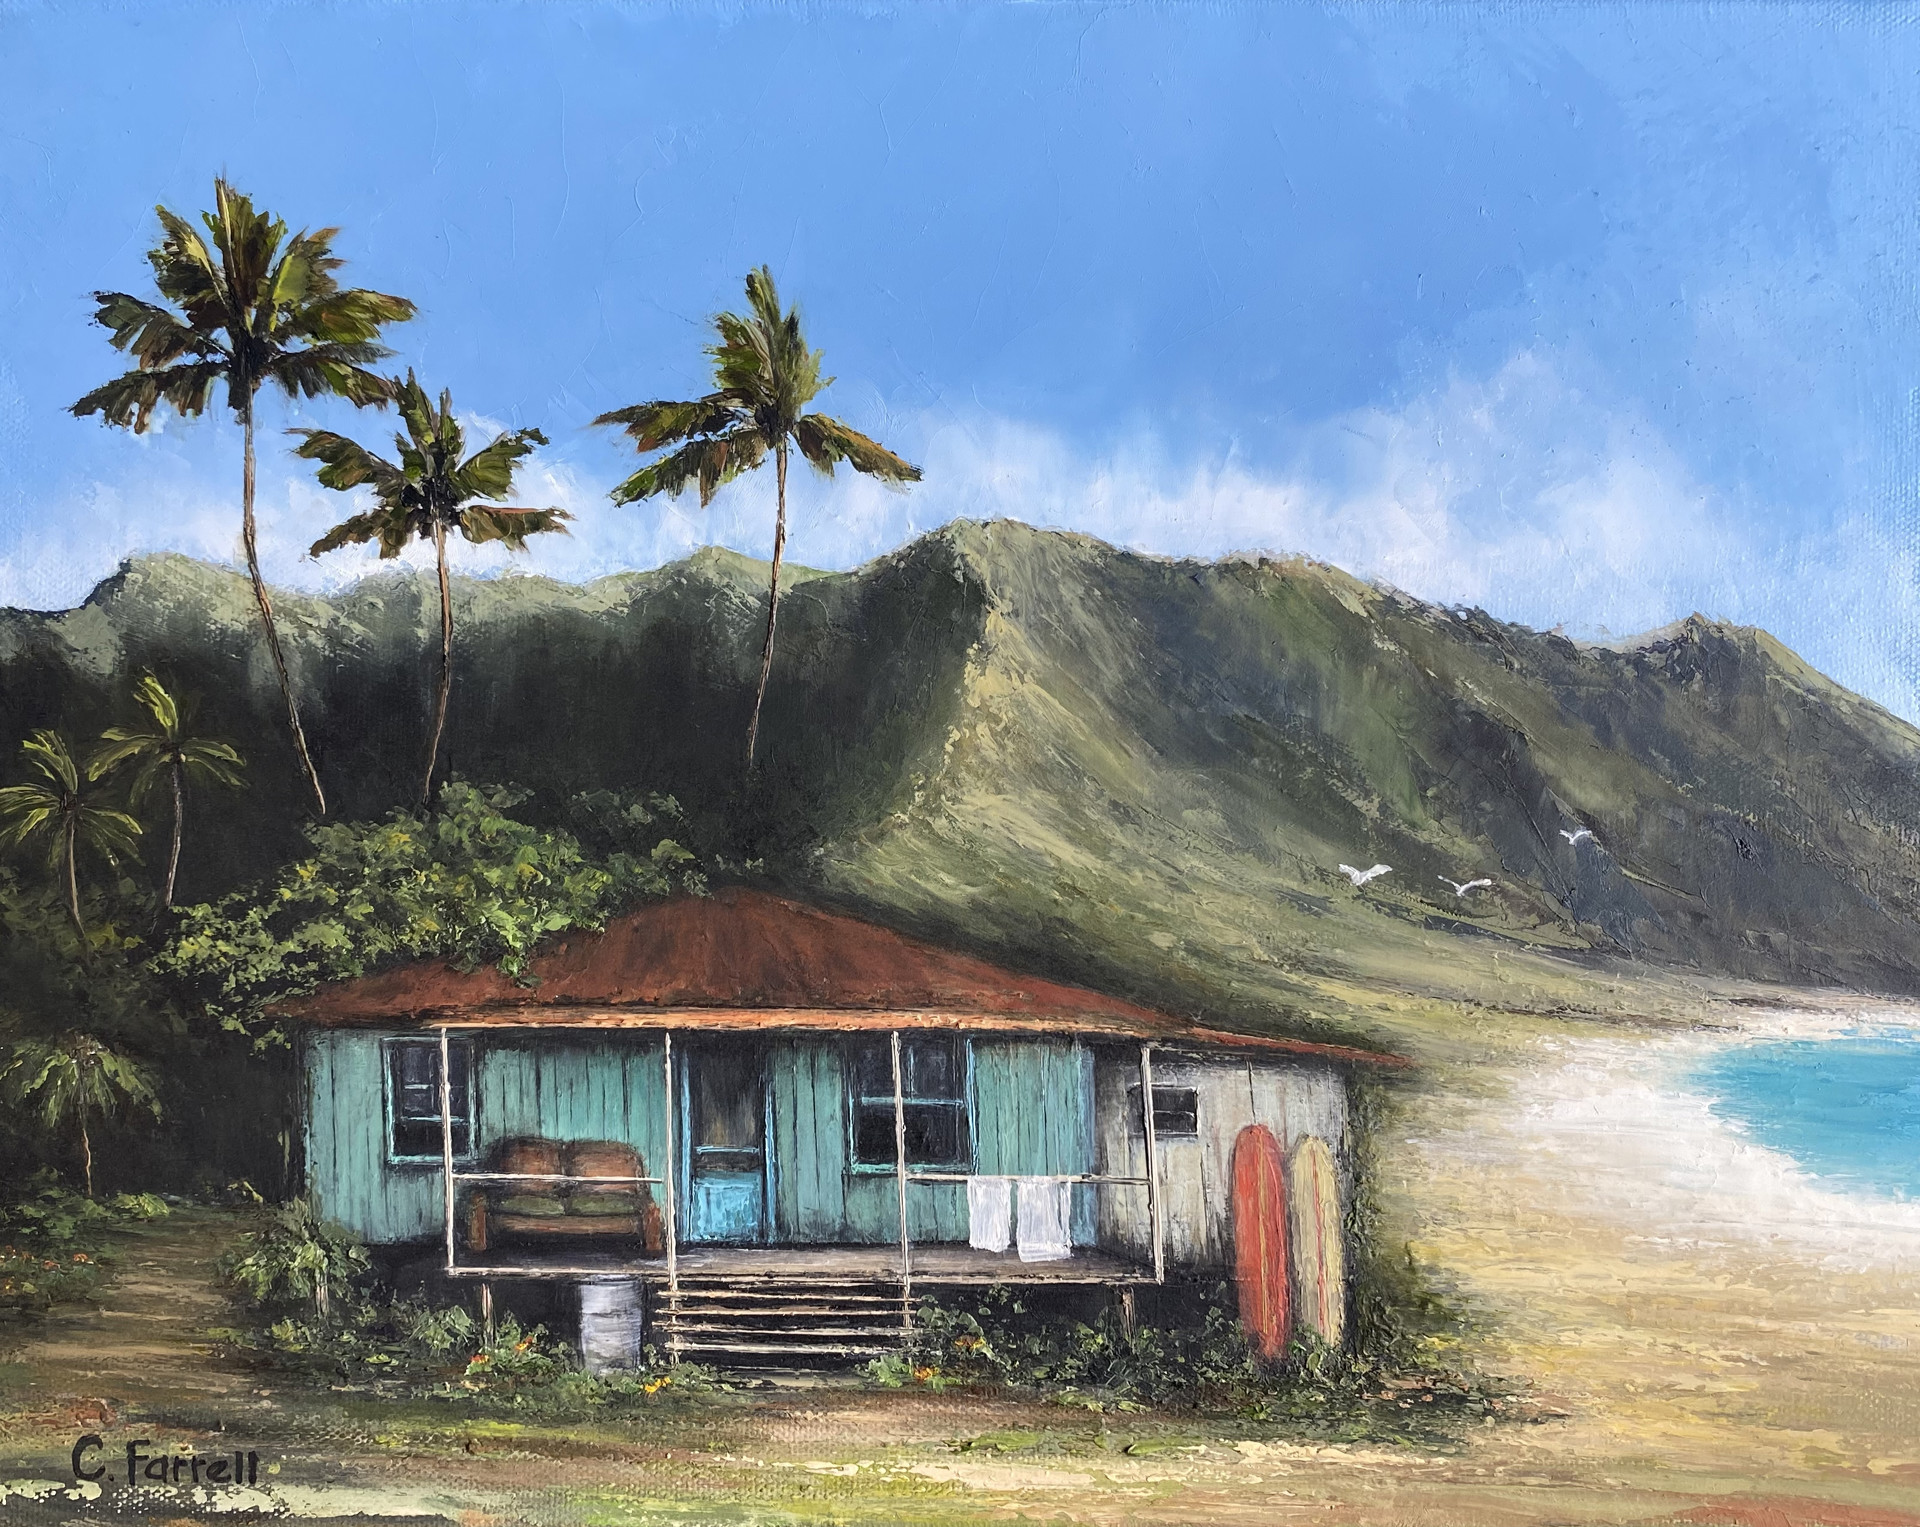 Island Life by Cynthia Farrell